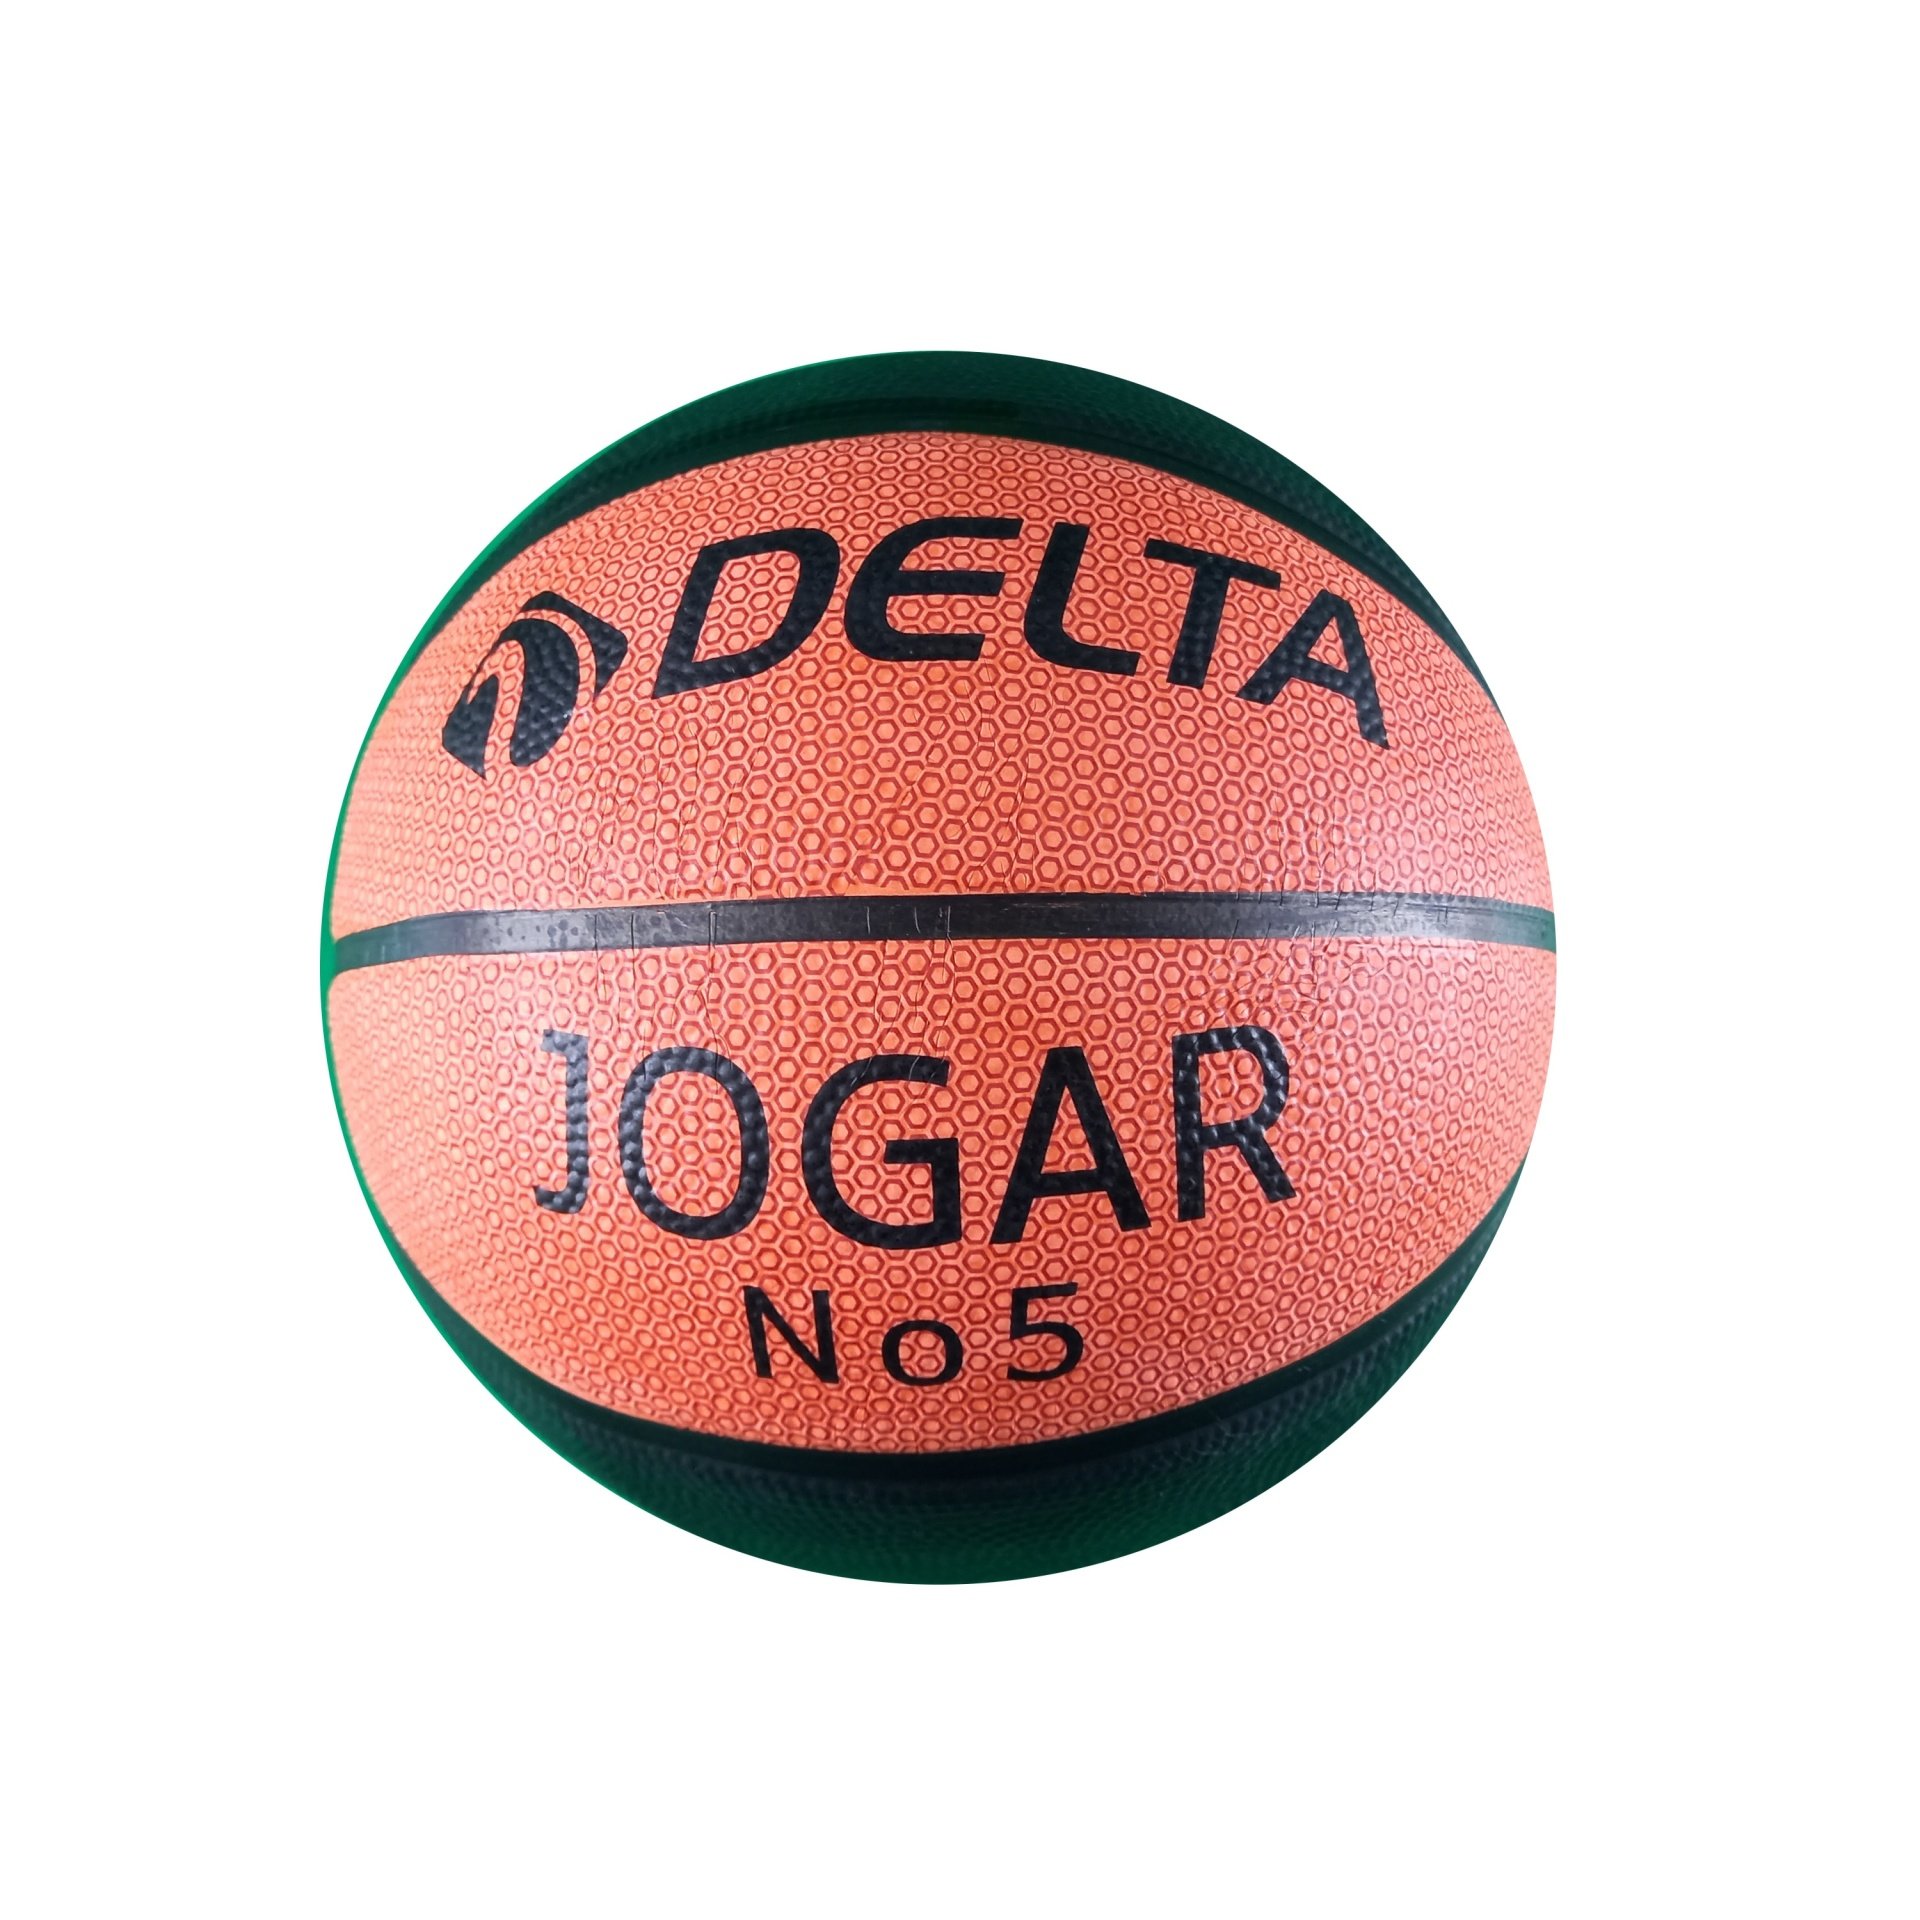 Delta Baketbol Topu Joger No :5 00358